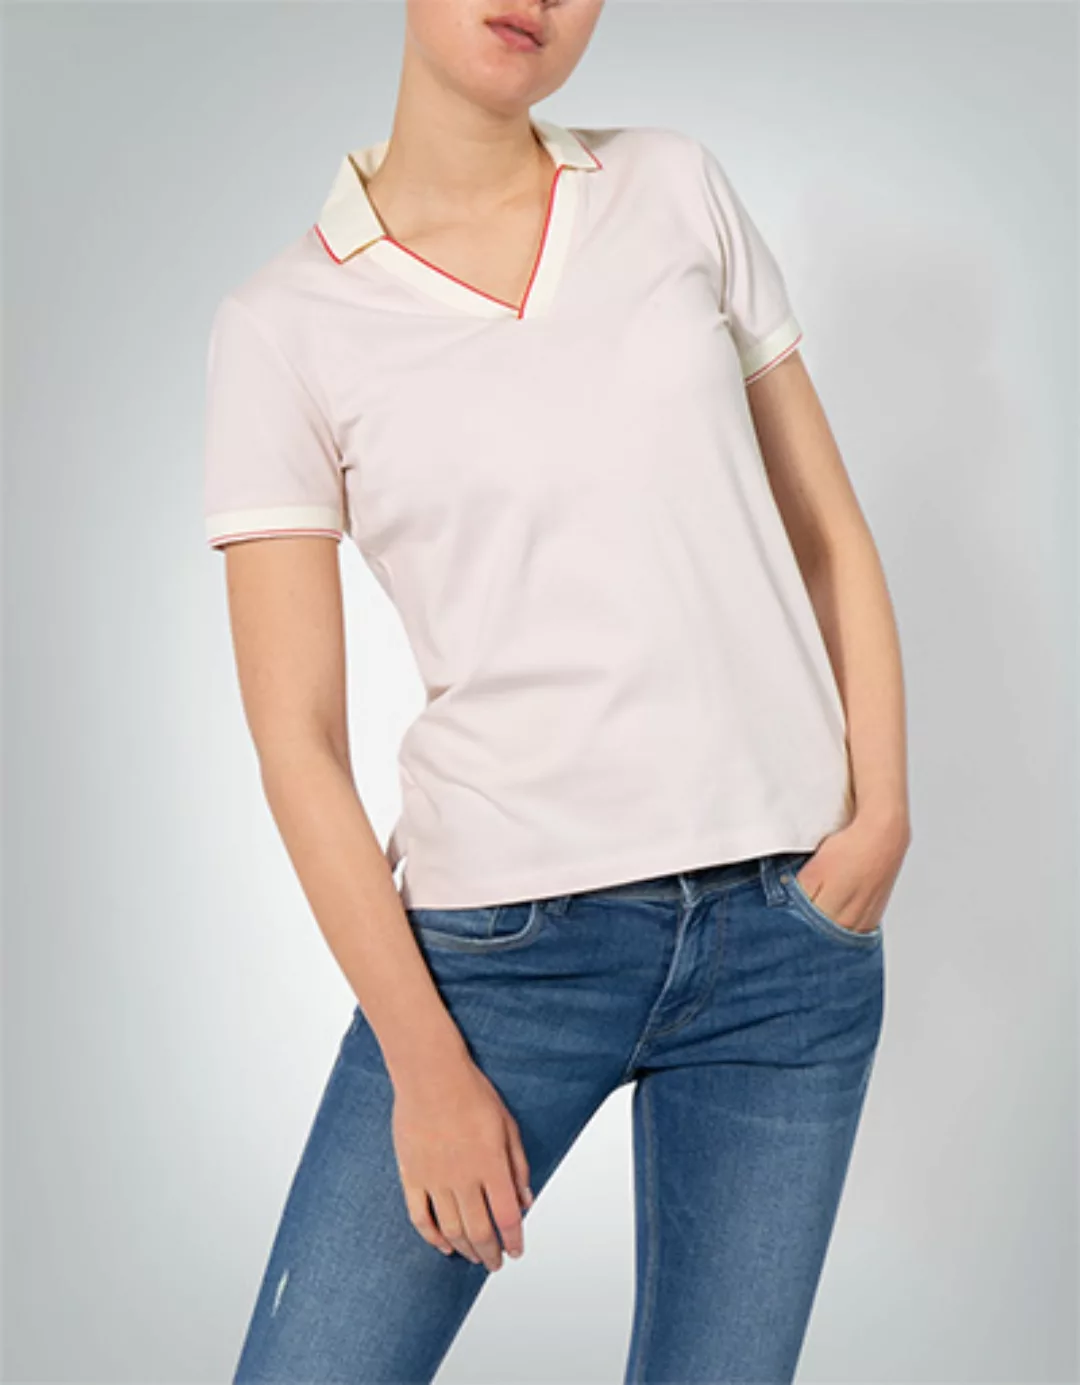 Marc O'Polo Damen Polo-Shirt M03 2182 53005/615 günstig online kaufen